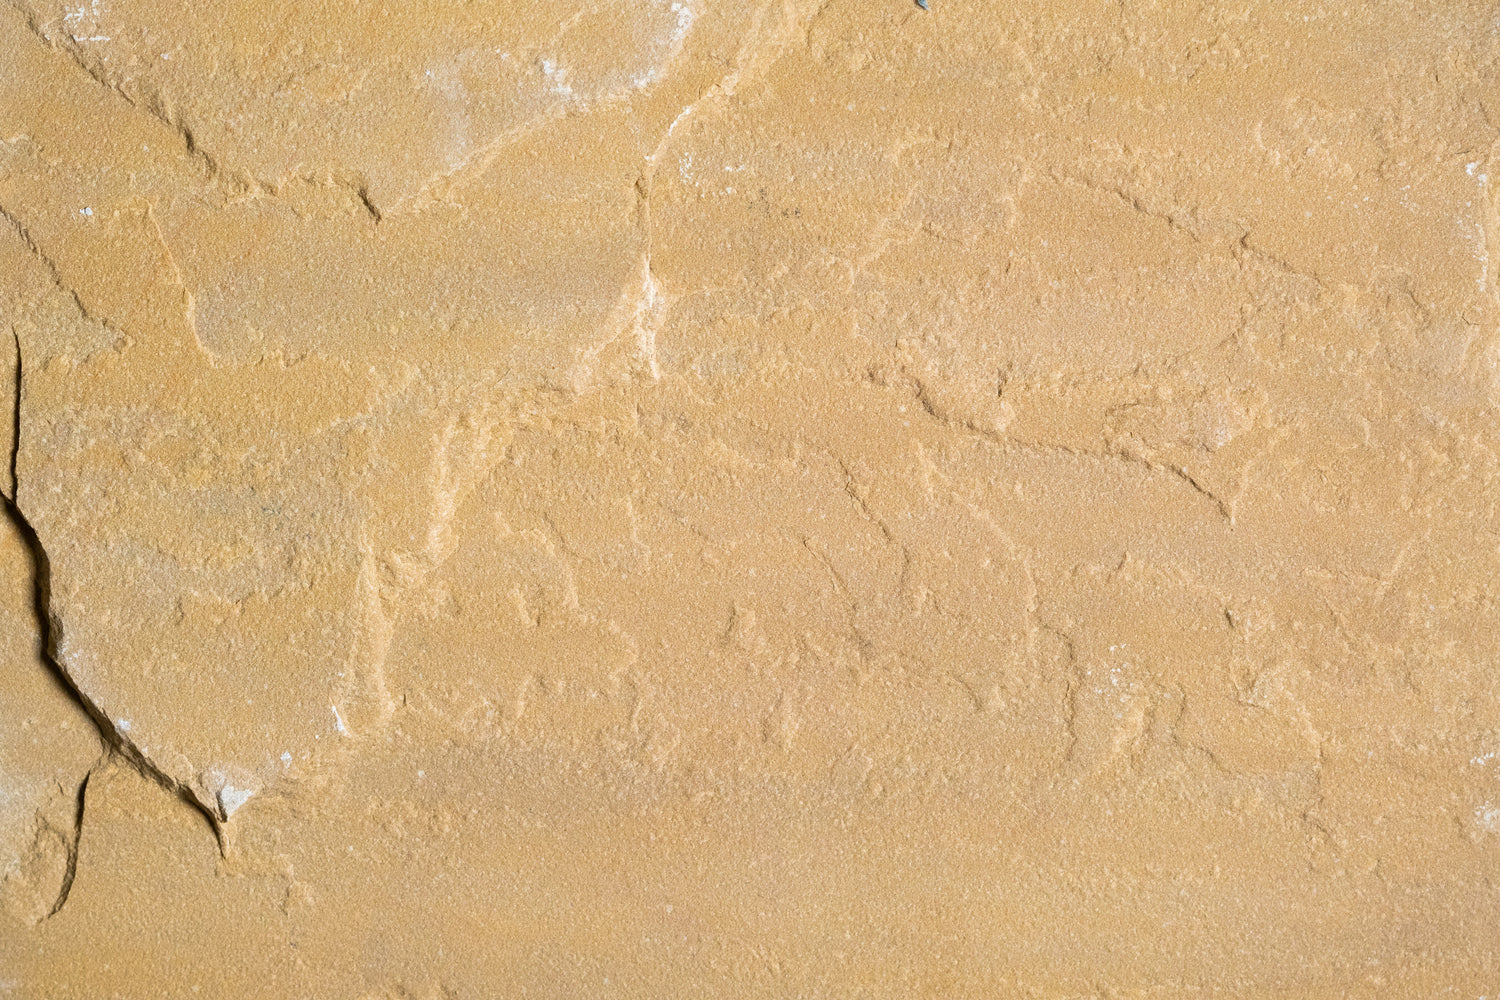 Kokomo Gold Light Sandstone Tile - 12" x 12" x 1/2" - 3/4" Natural Cleft Face & Back